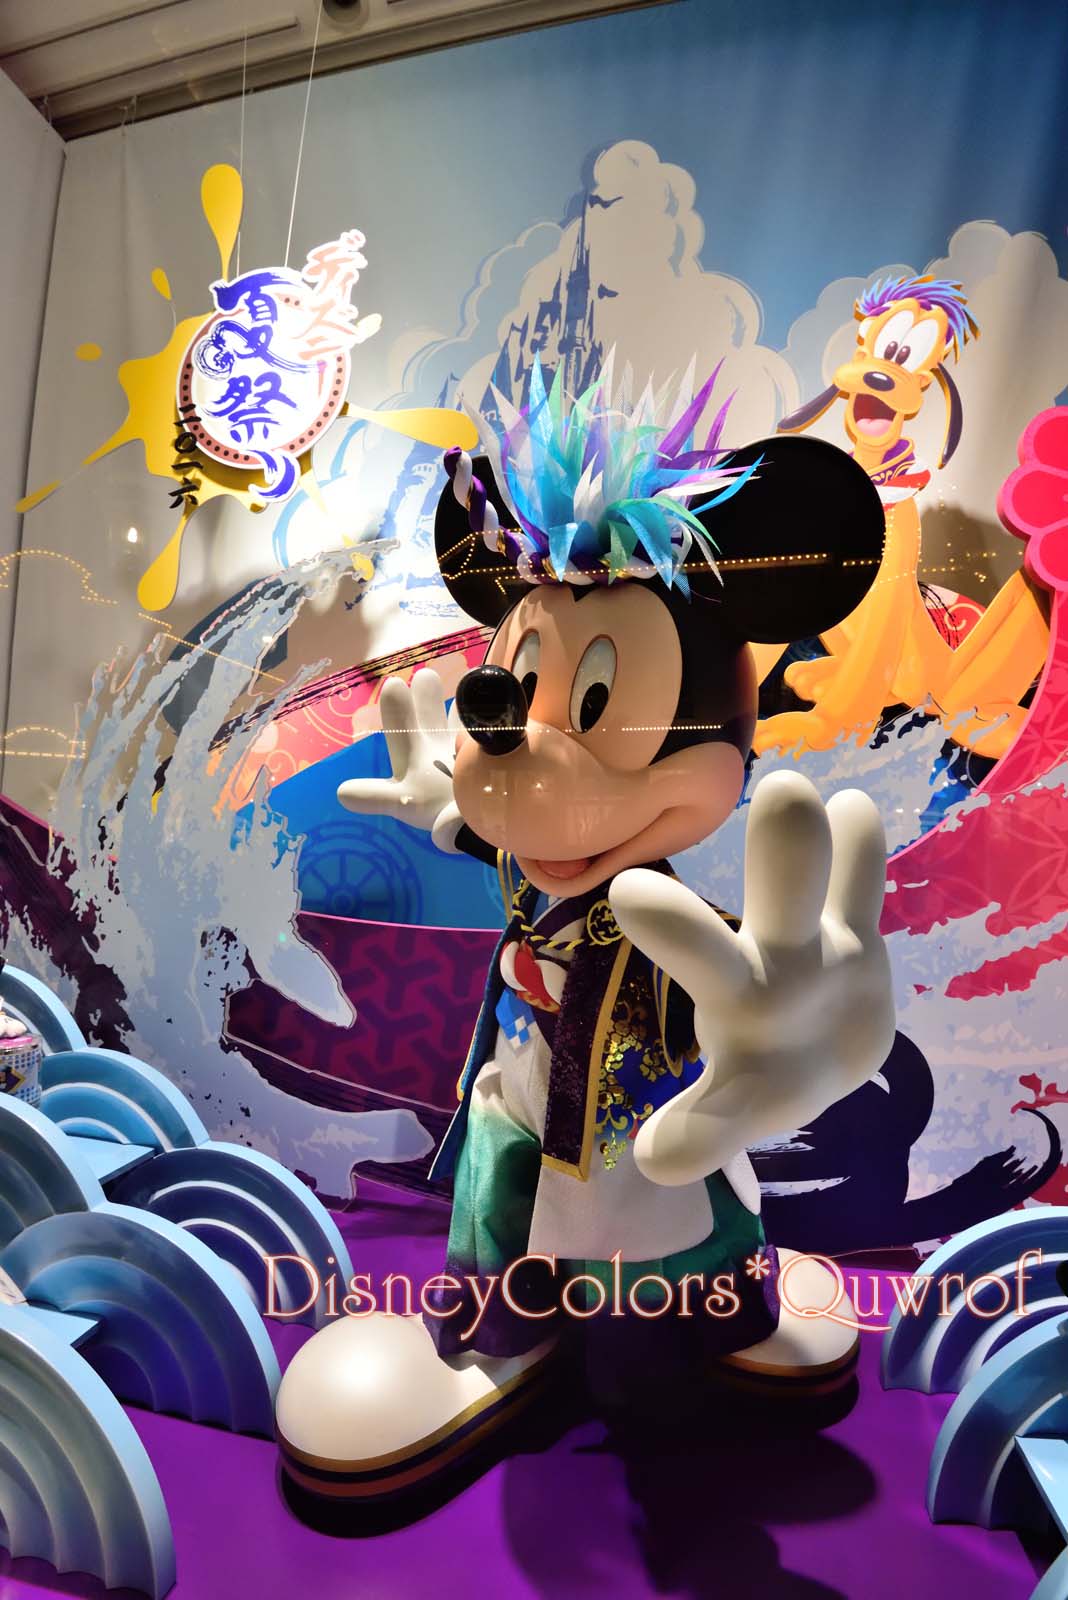 パーク内も夏祭りで盛り上がる Tdl ディズニー夏祭り16 パークデコレーション Disney Colors Blog